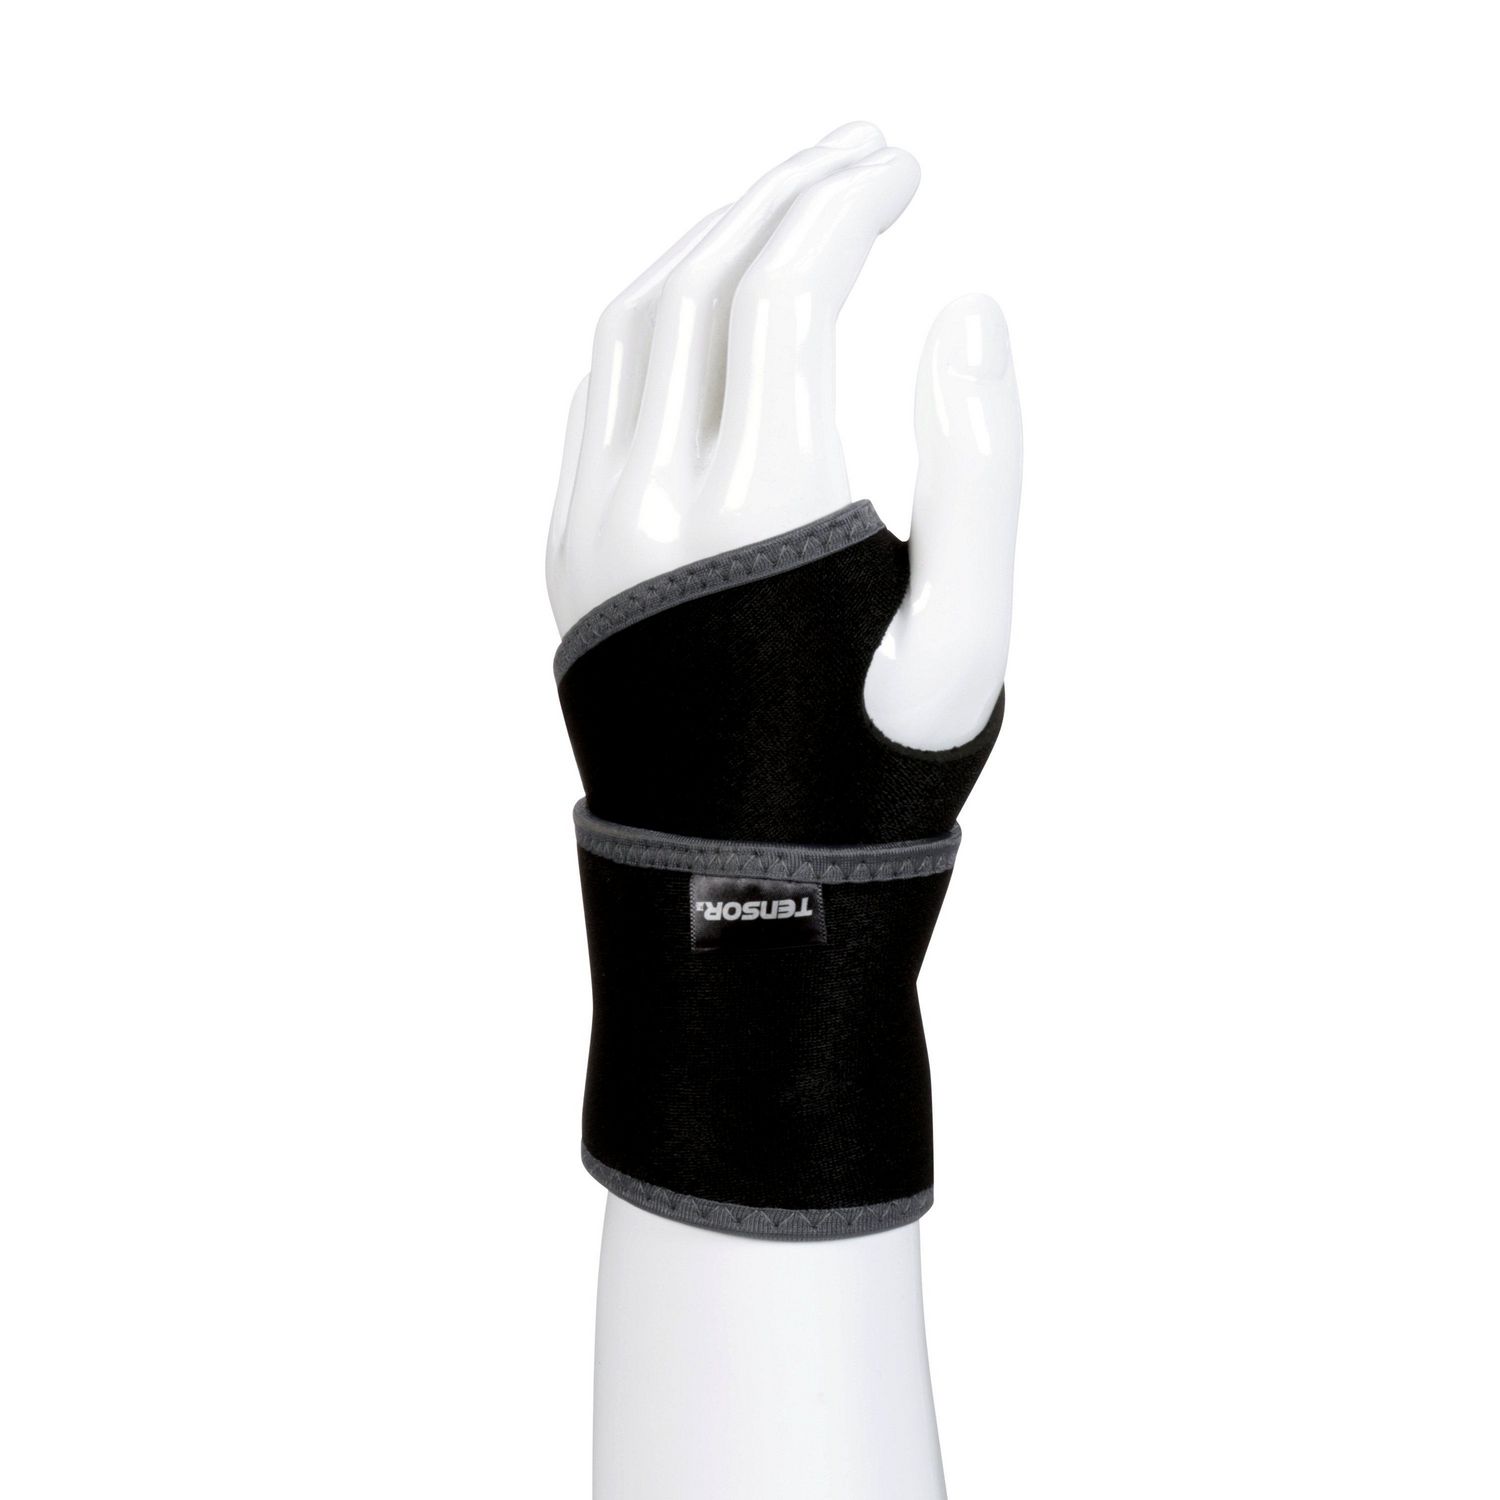 Tensor™ Adjustable Compression Wrist Support, black, adjustable